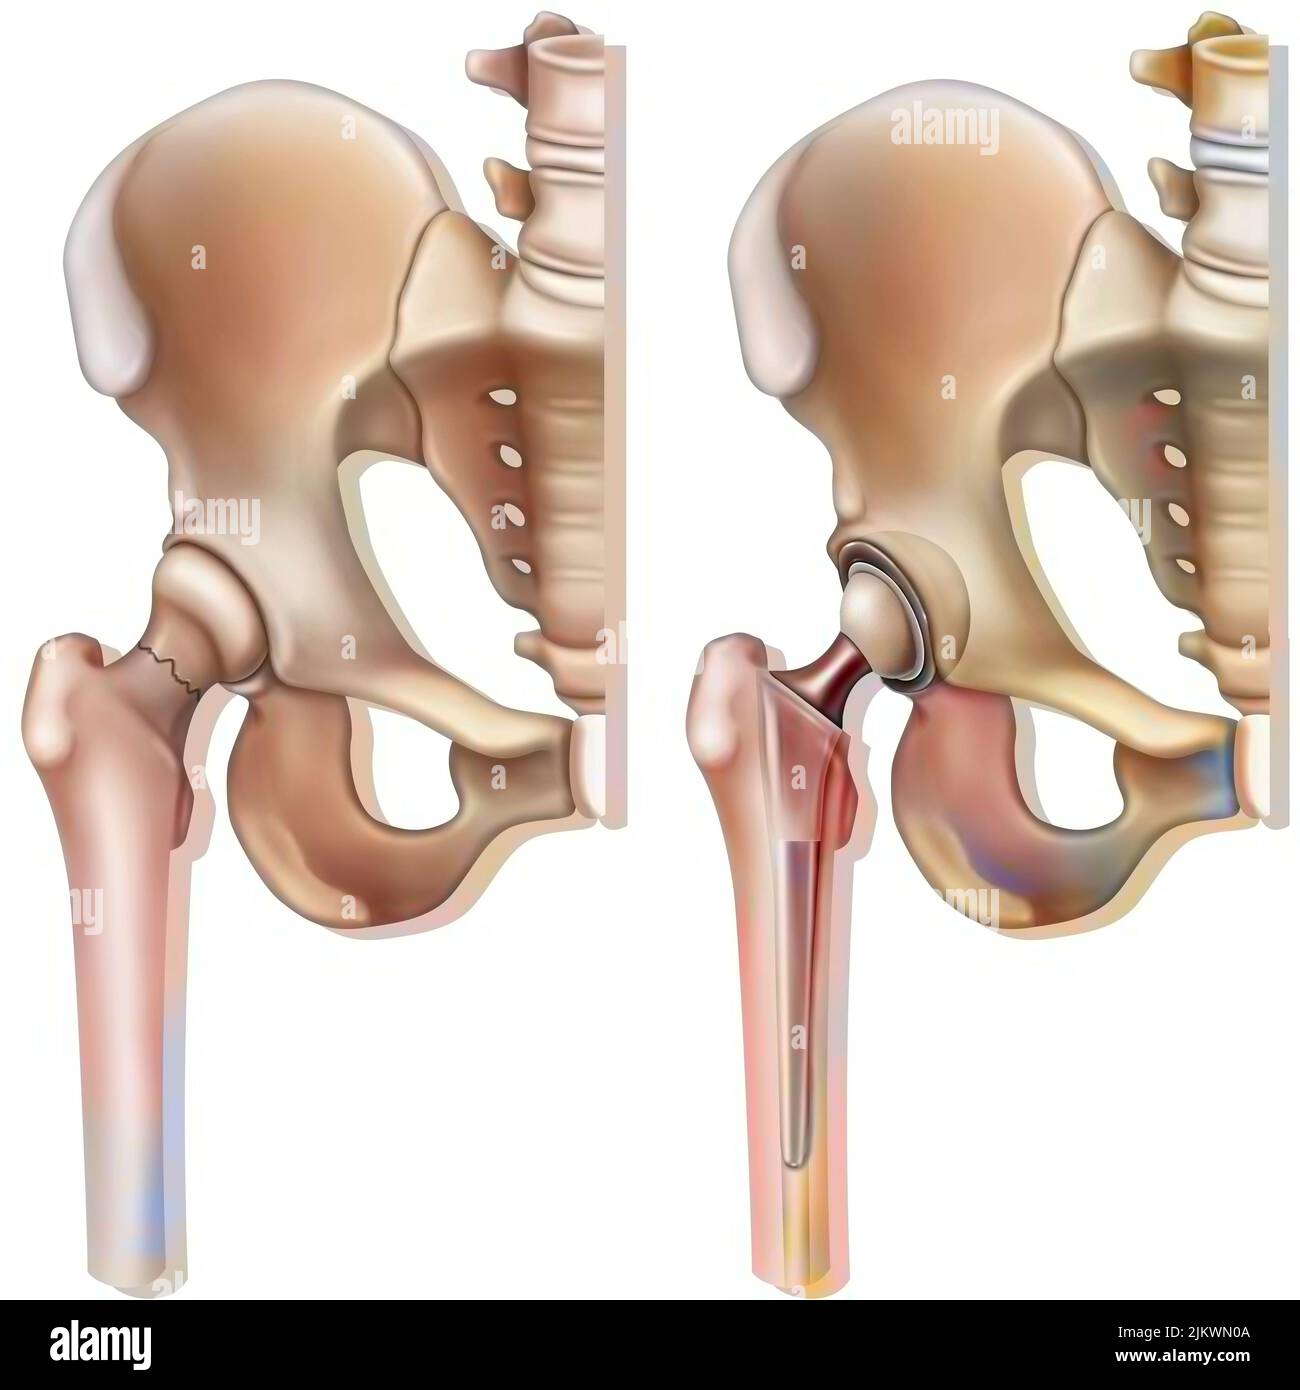 Frattura del collo femorale (osteoporosi) e protesi dell'anca. Foto Stock